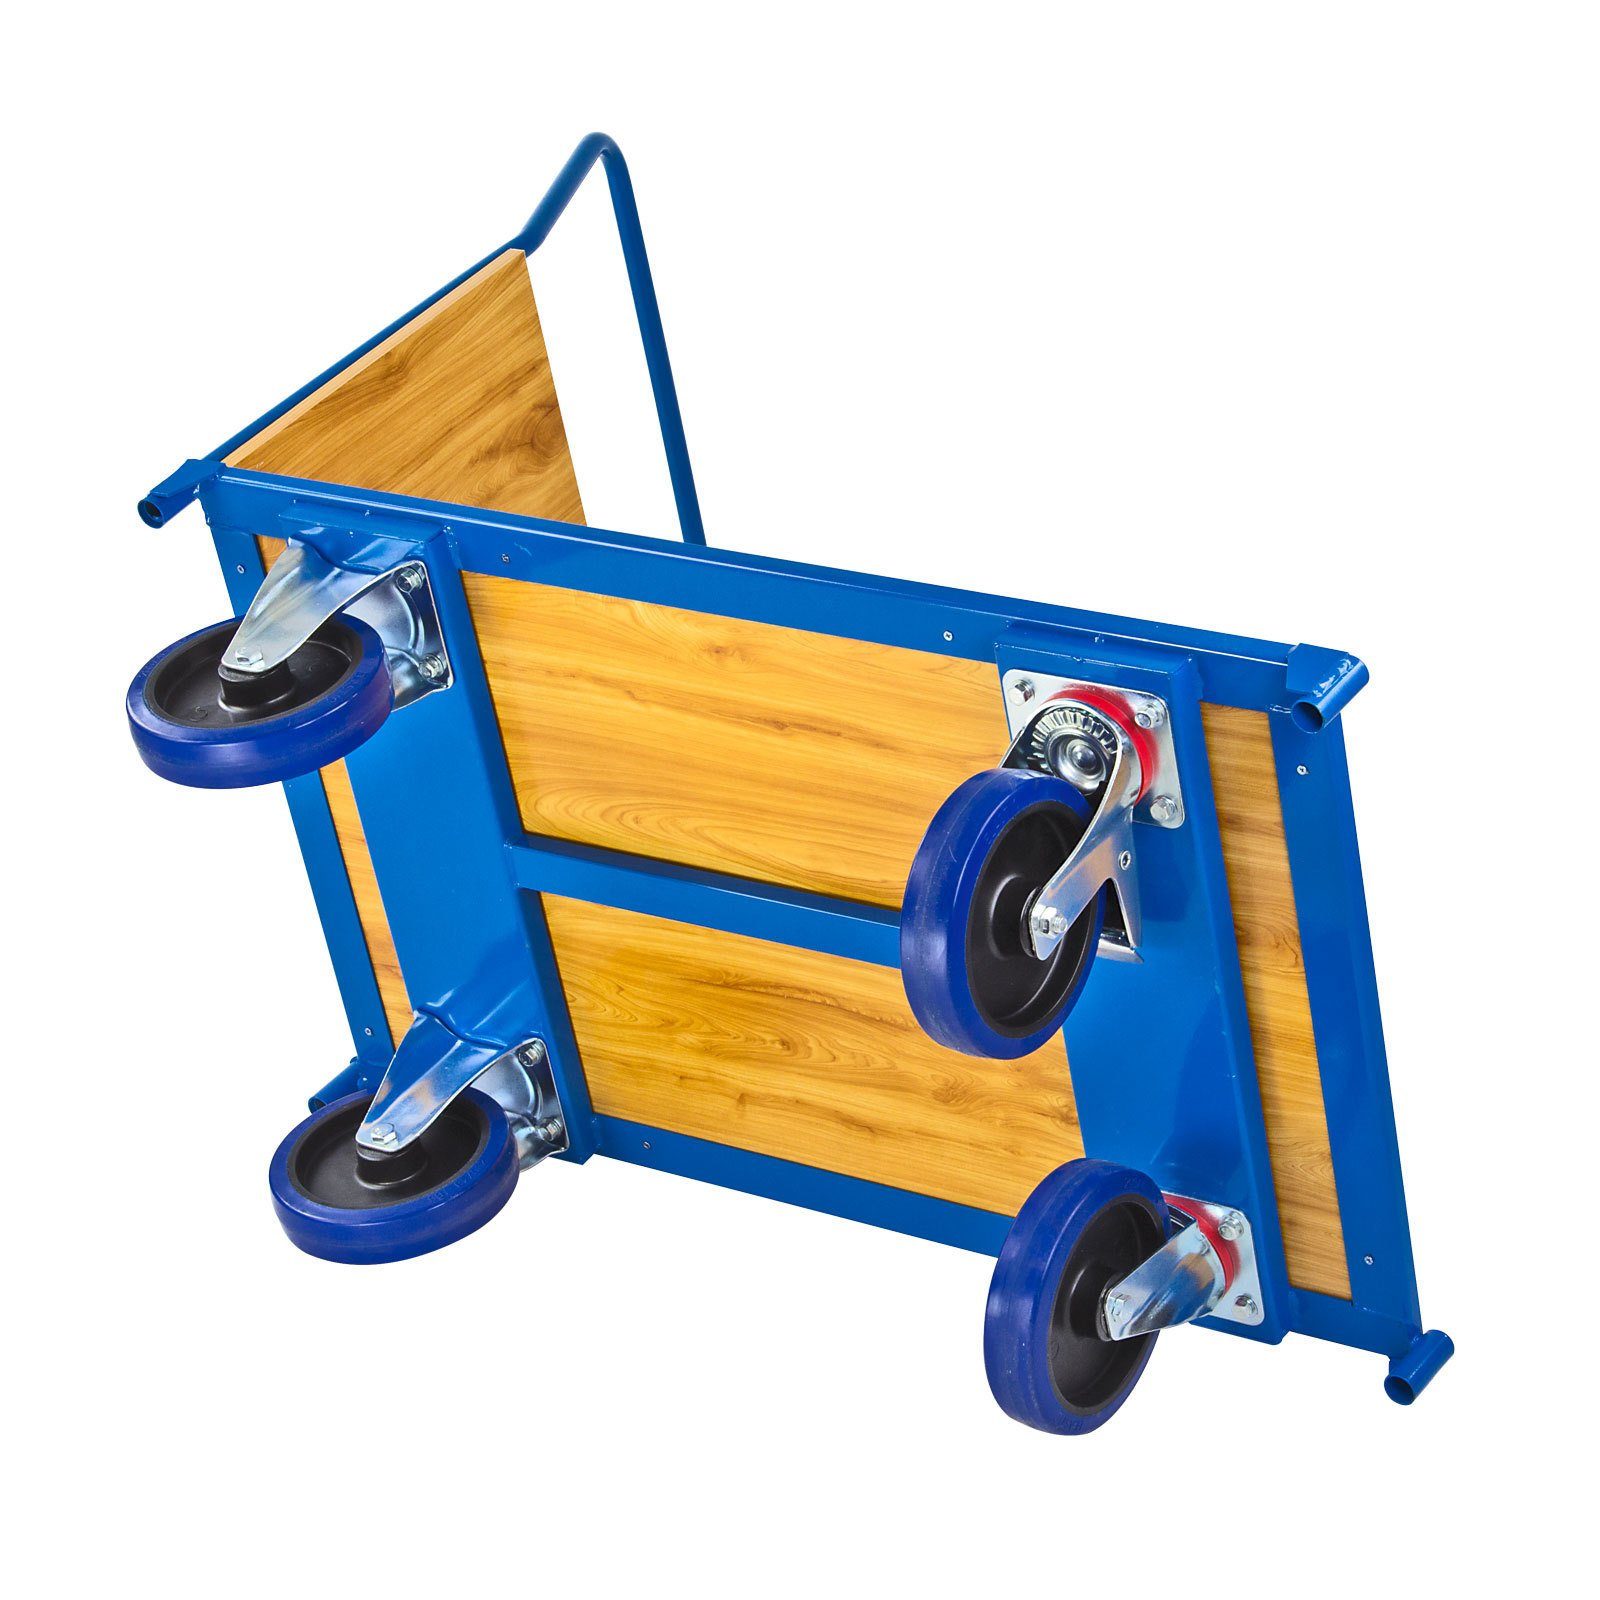 PROREGAL® Handwagen Transportwagen Pro, HxBxL Traglast 600kg, 97x61x116cm, Blau